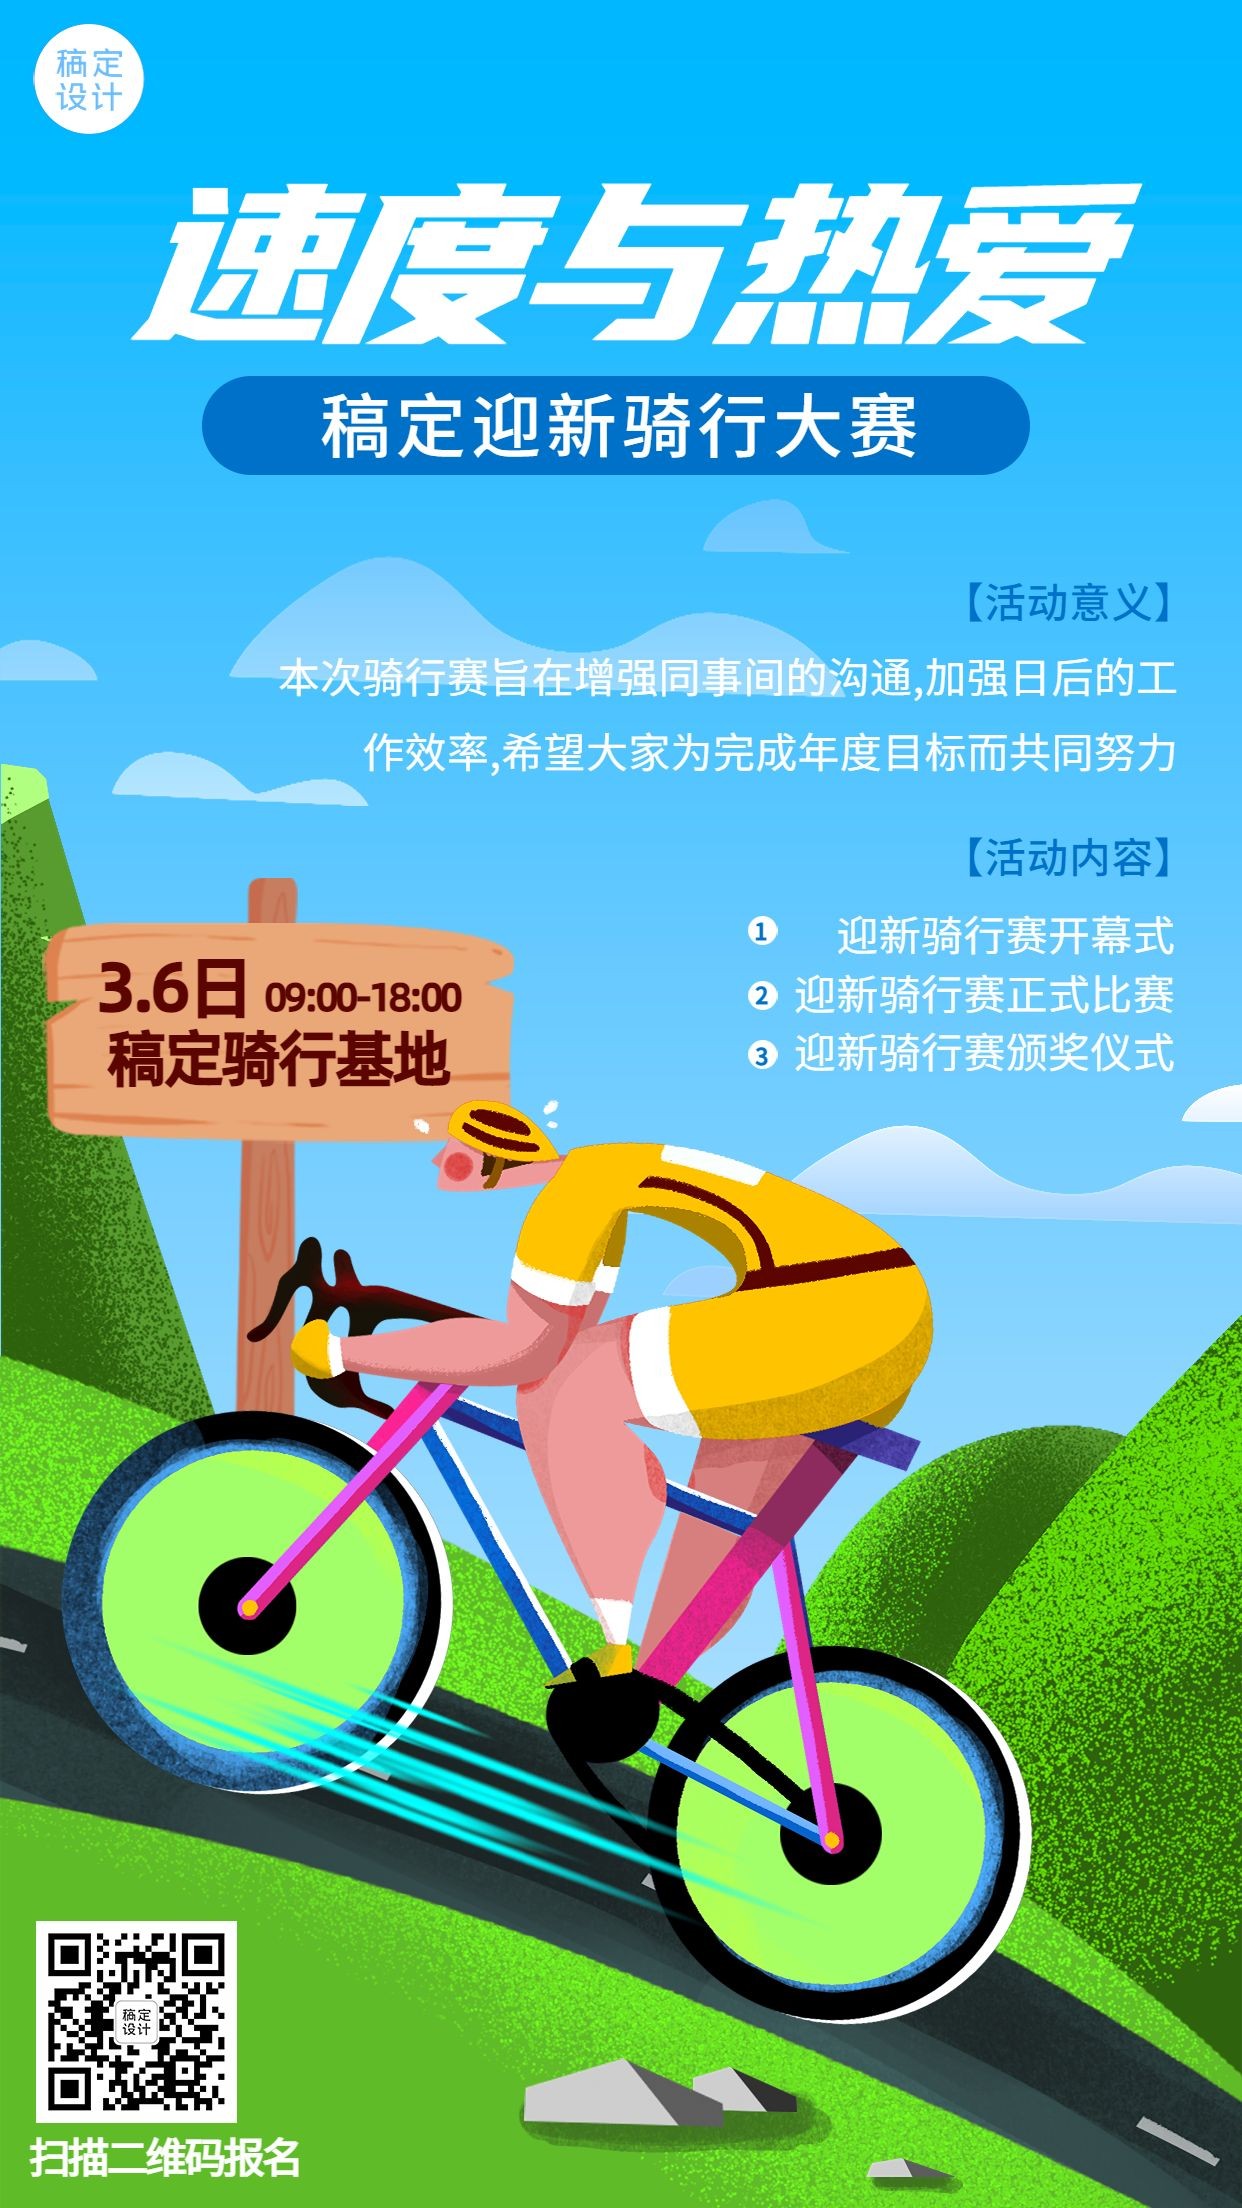 企业夏季团建活动通知骑行大赛宣传海报预览效果